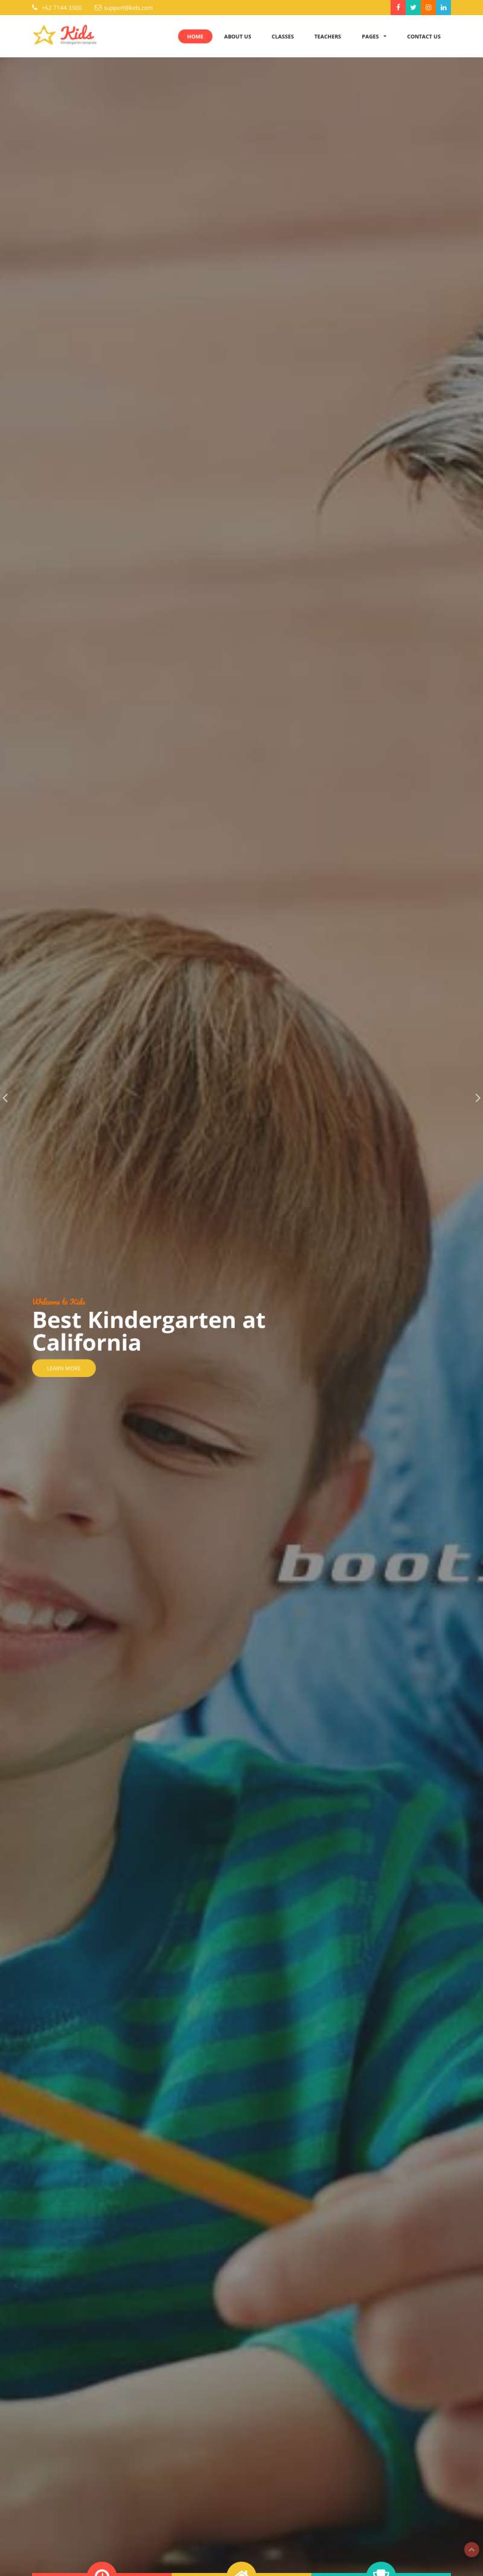 幼儿园儿童教育类网站Bootstrap模板